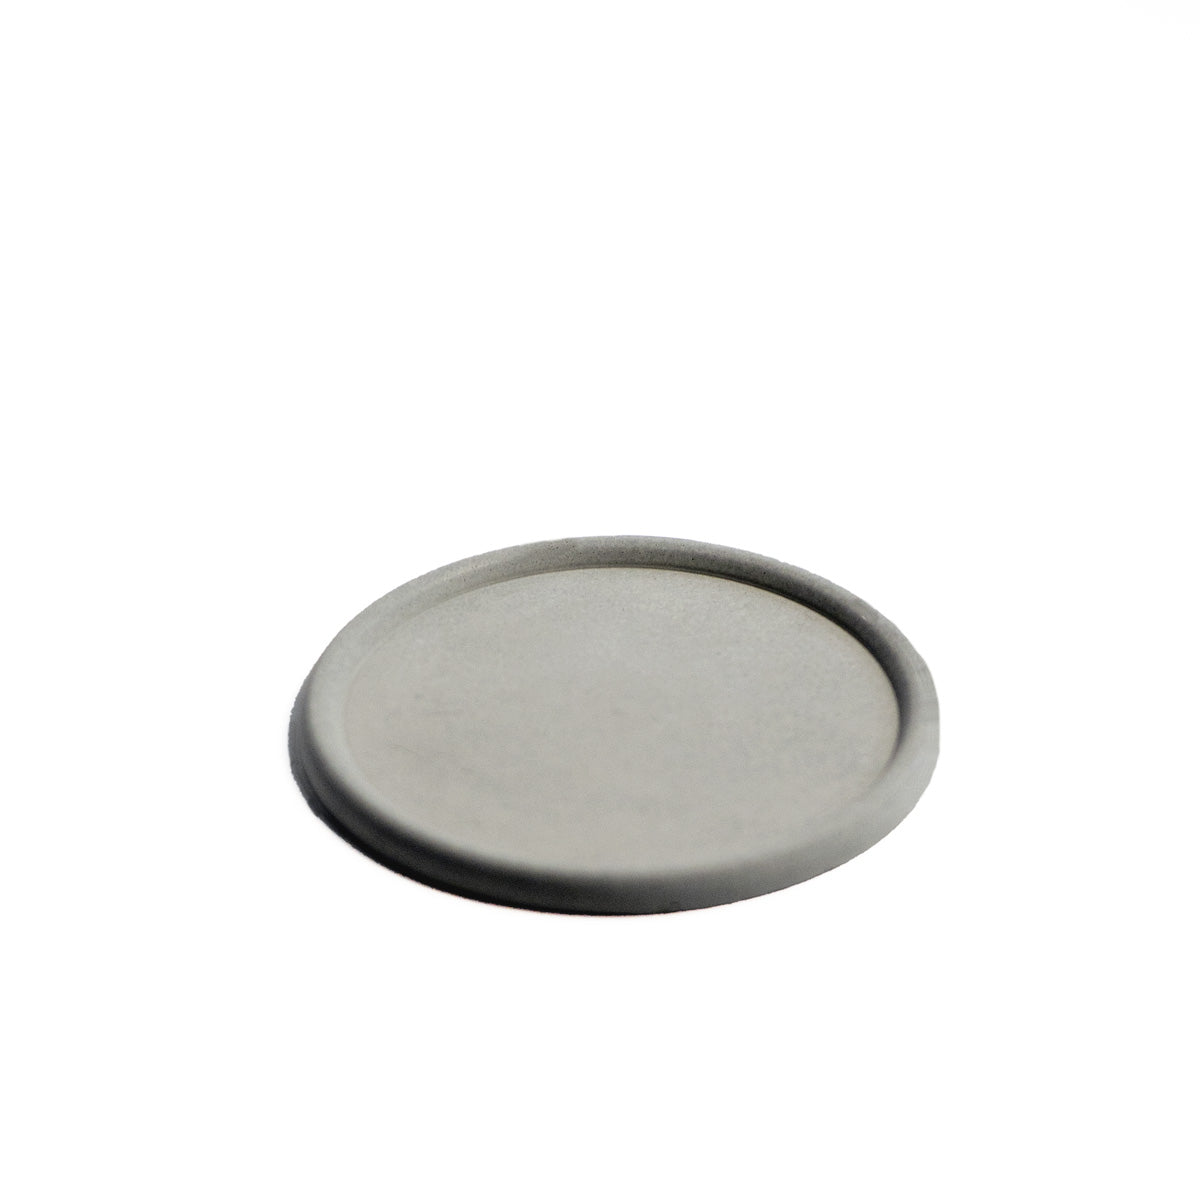 Concrete White Round Tray